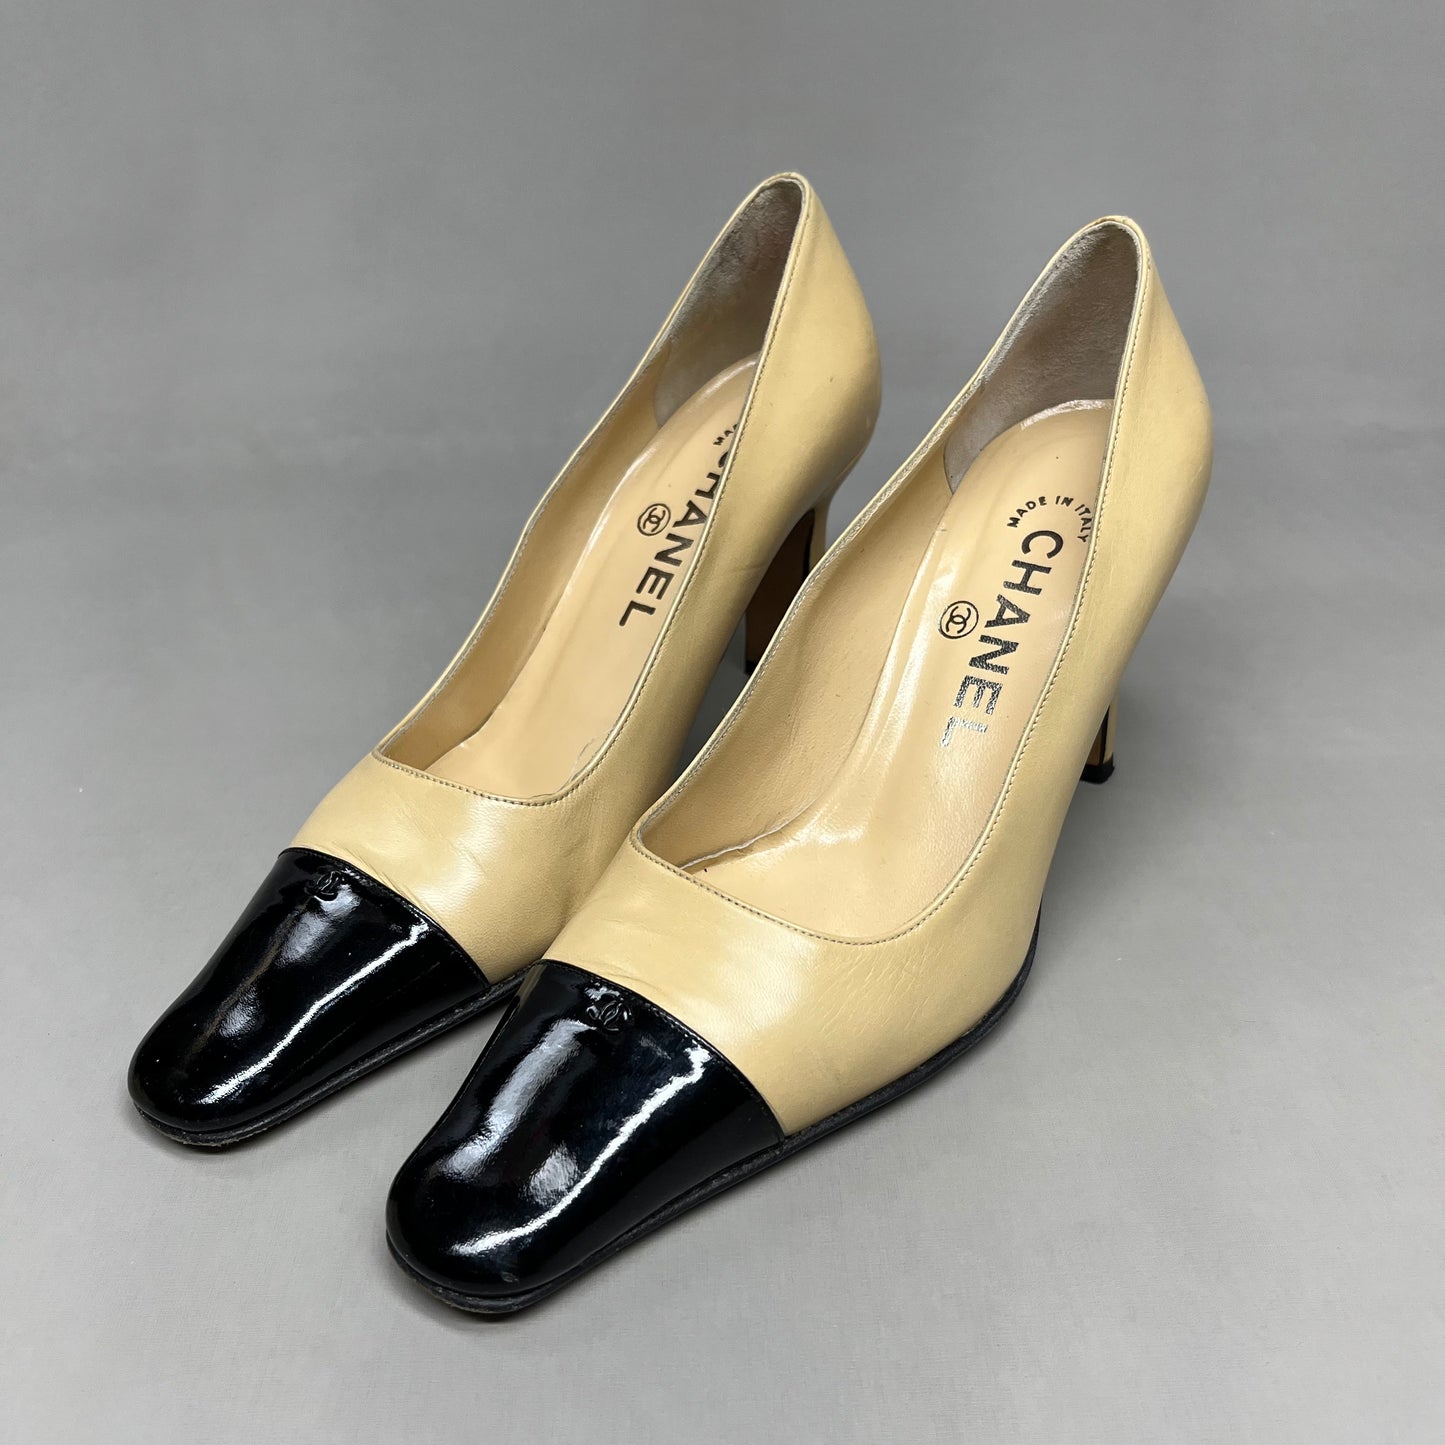 CHANEL Women's Vintage Court Pumps Black Woven Toe Sz 35/5 Tan (Pre-Owned)